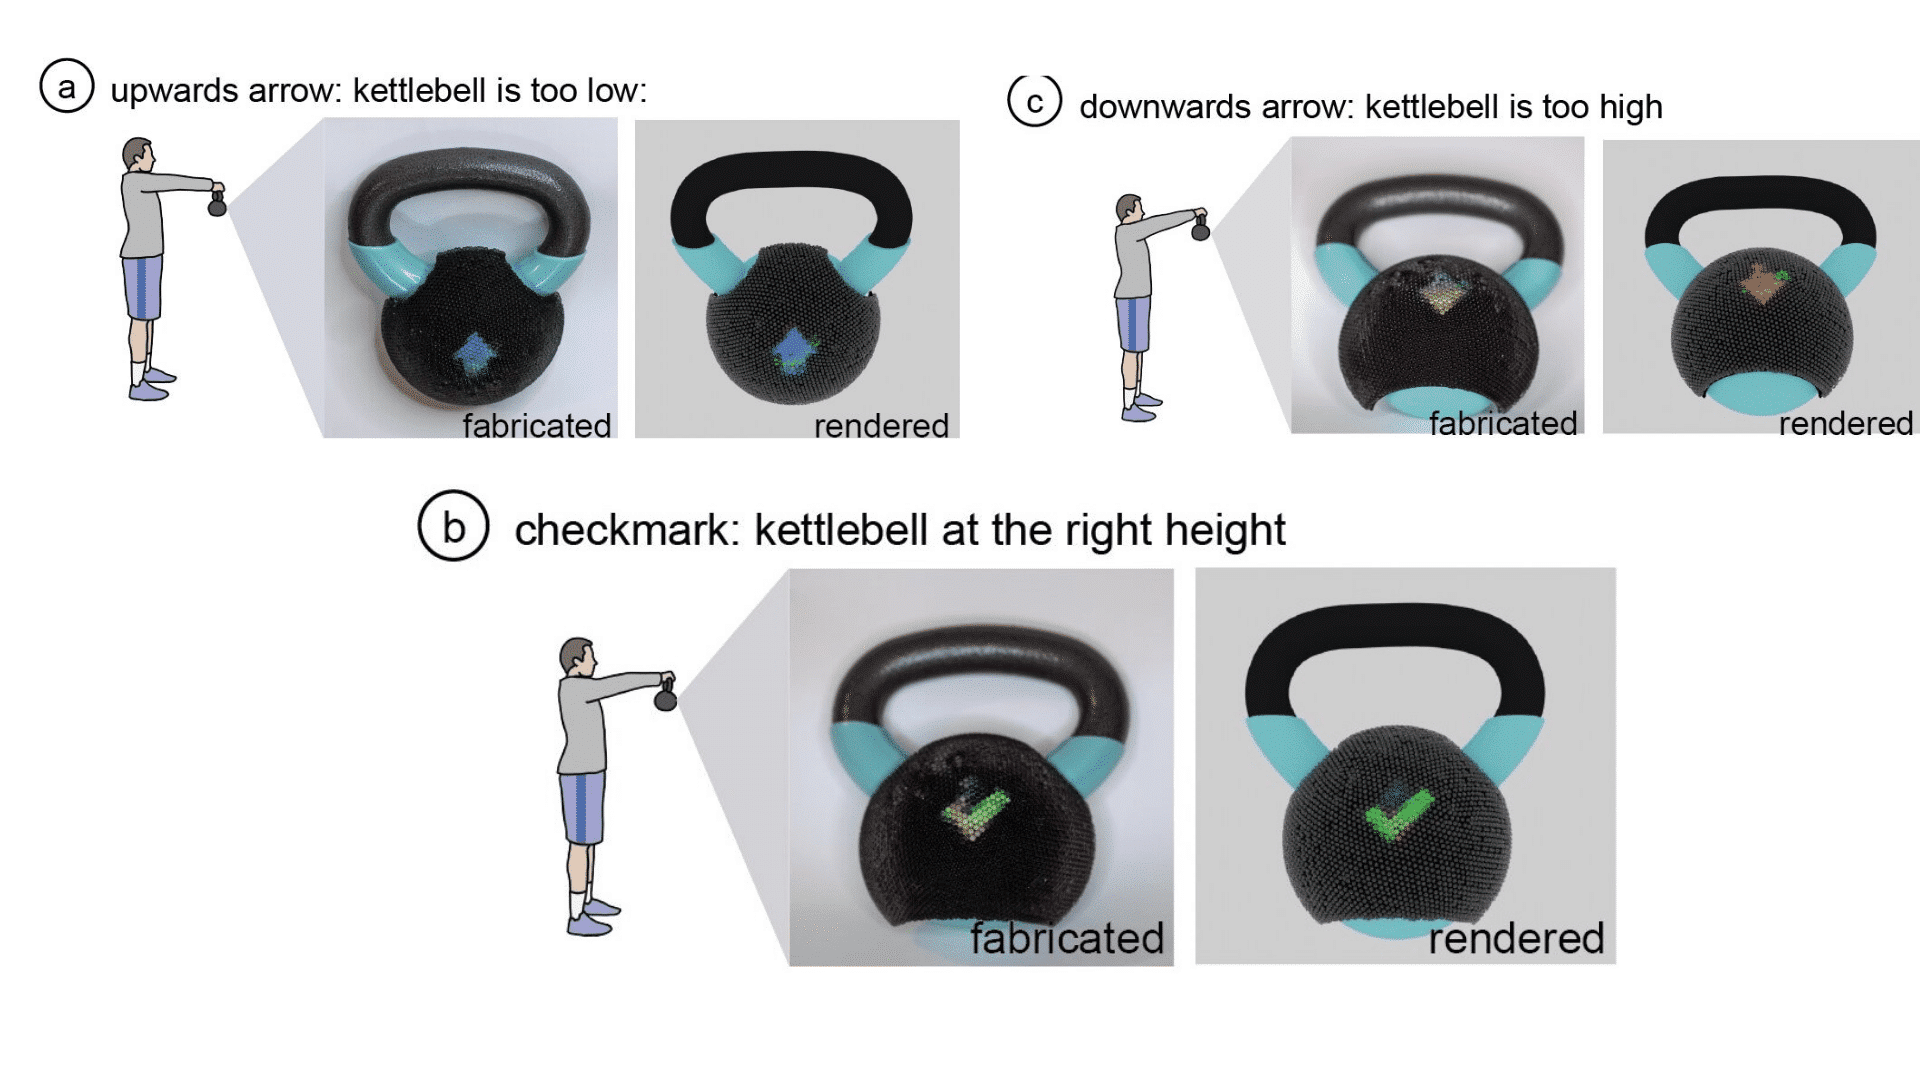 Les images sur le kettlebell changent selon l'angle d'observation pour indiquer la bonne position.